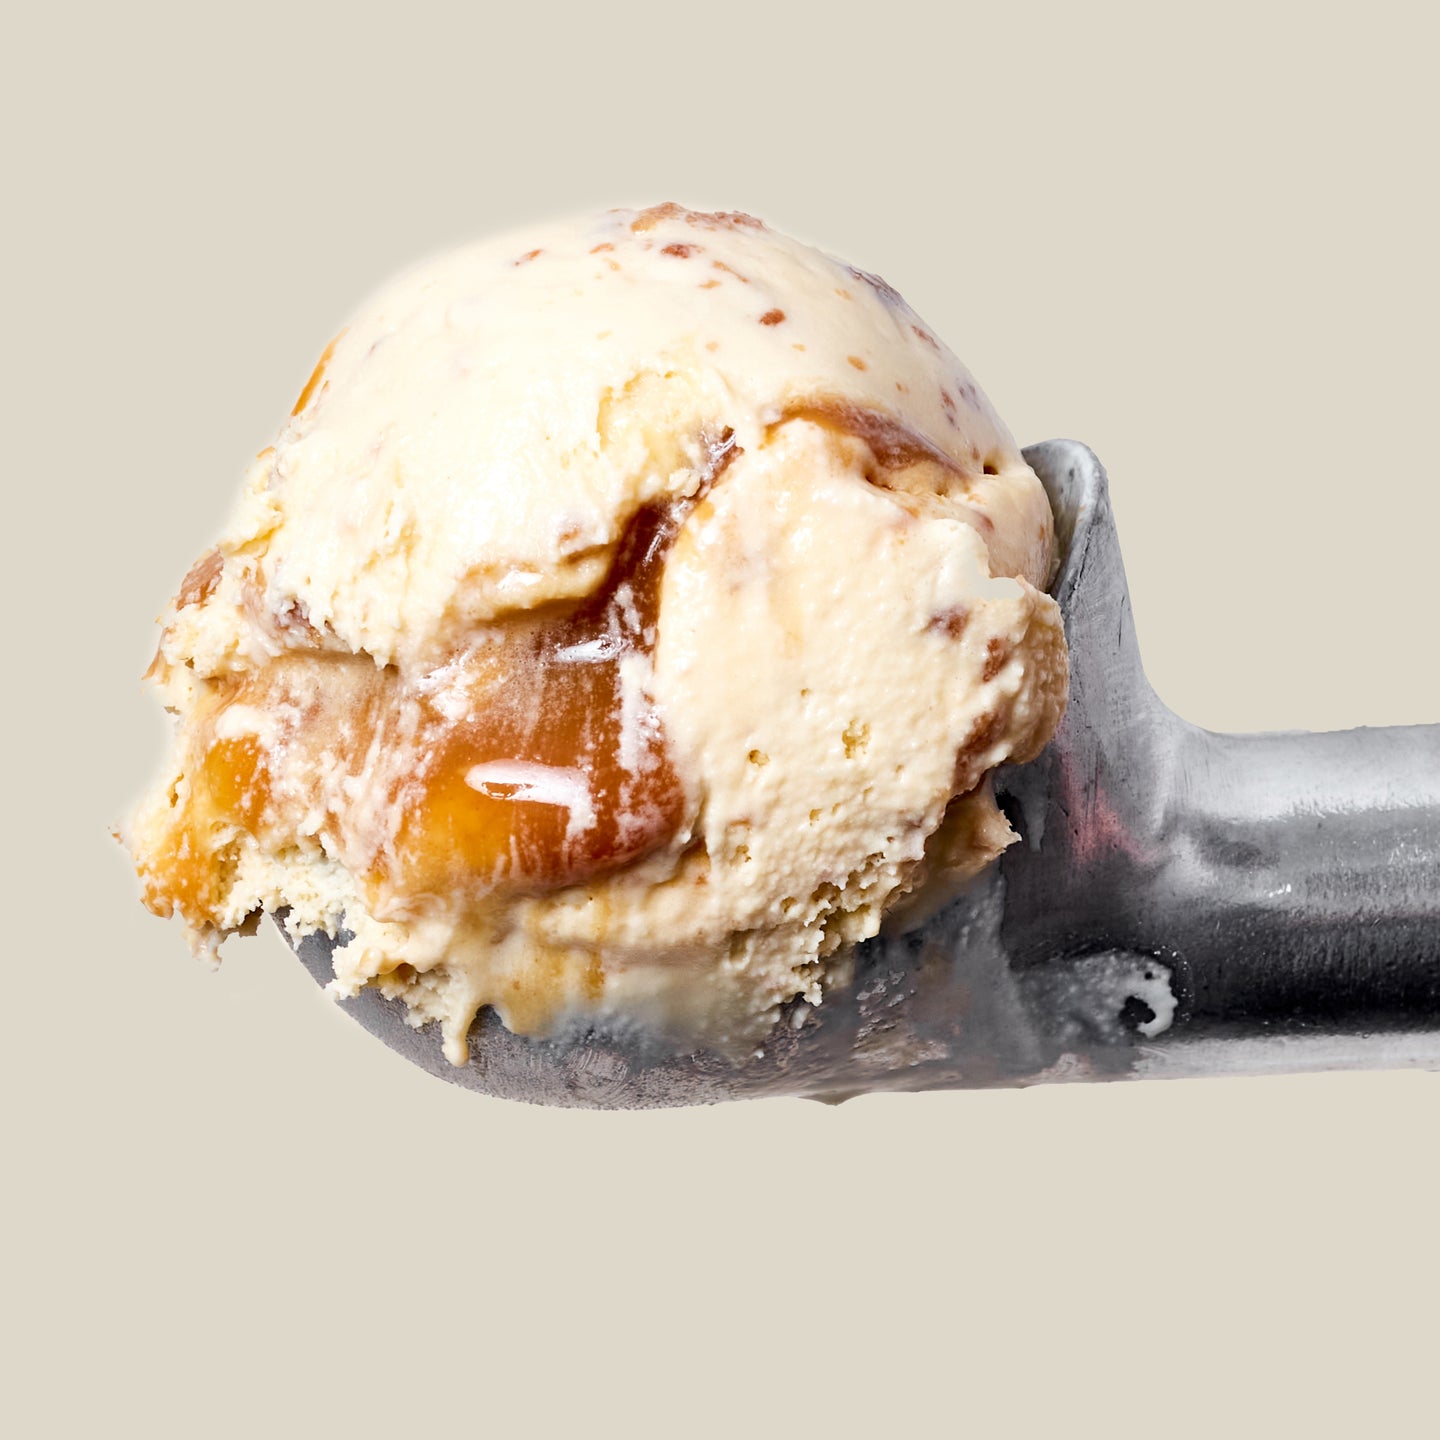 Single scoop of Pie Ice Cream